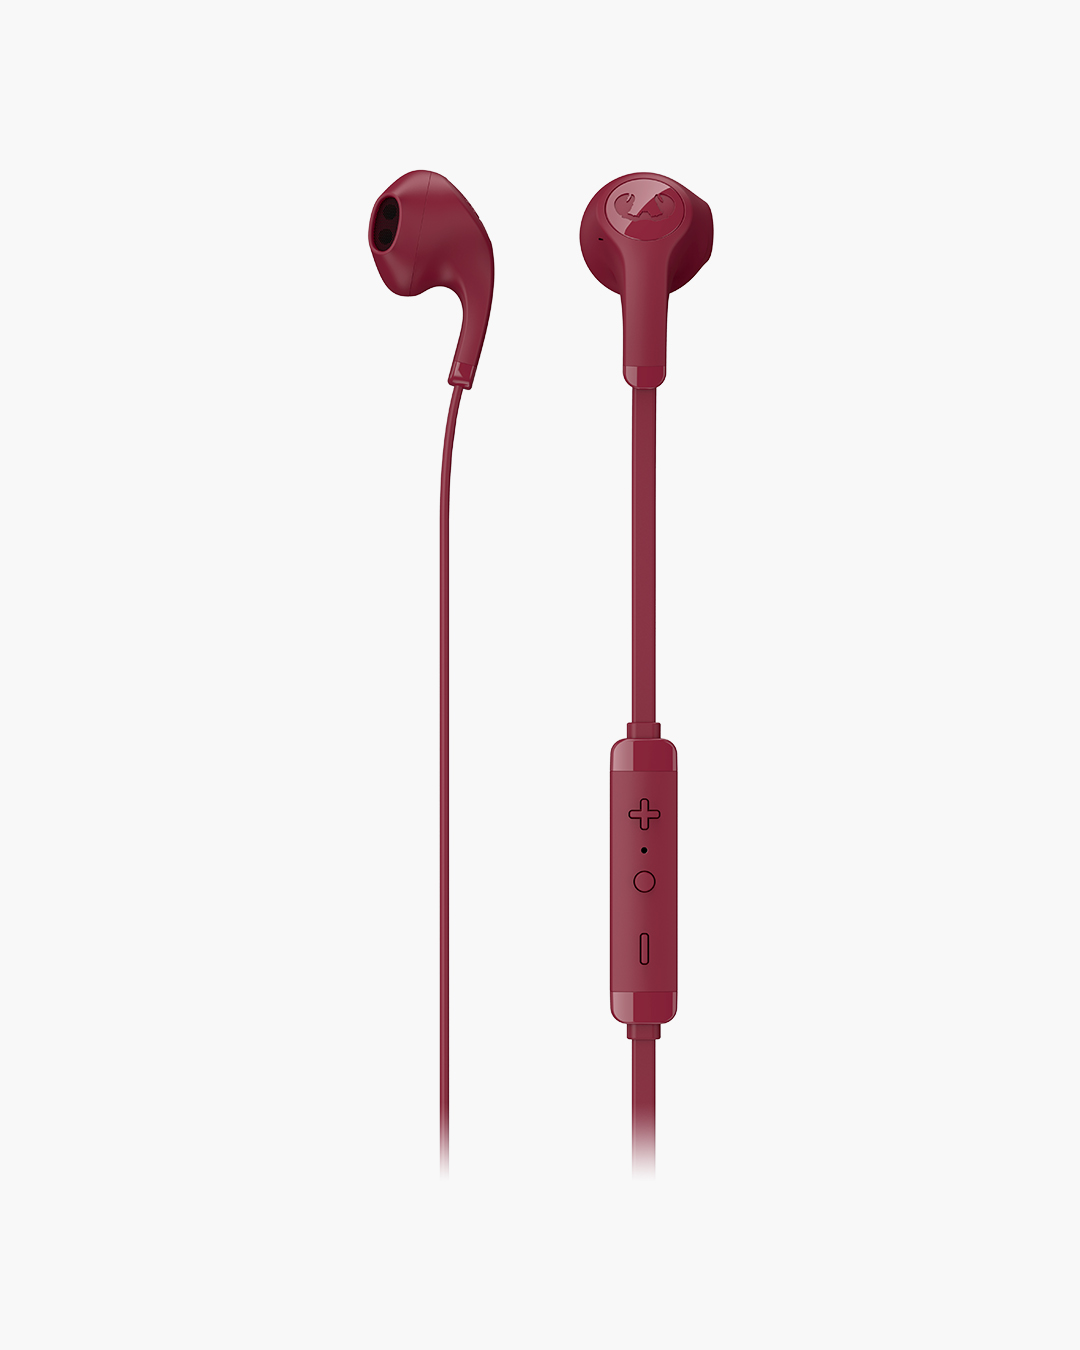 Fresh 'n Rebel - Flow - In-ear headphones - Ruby Red